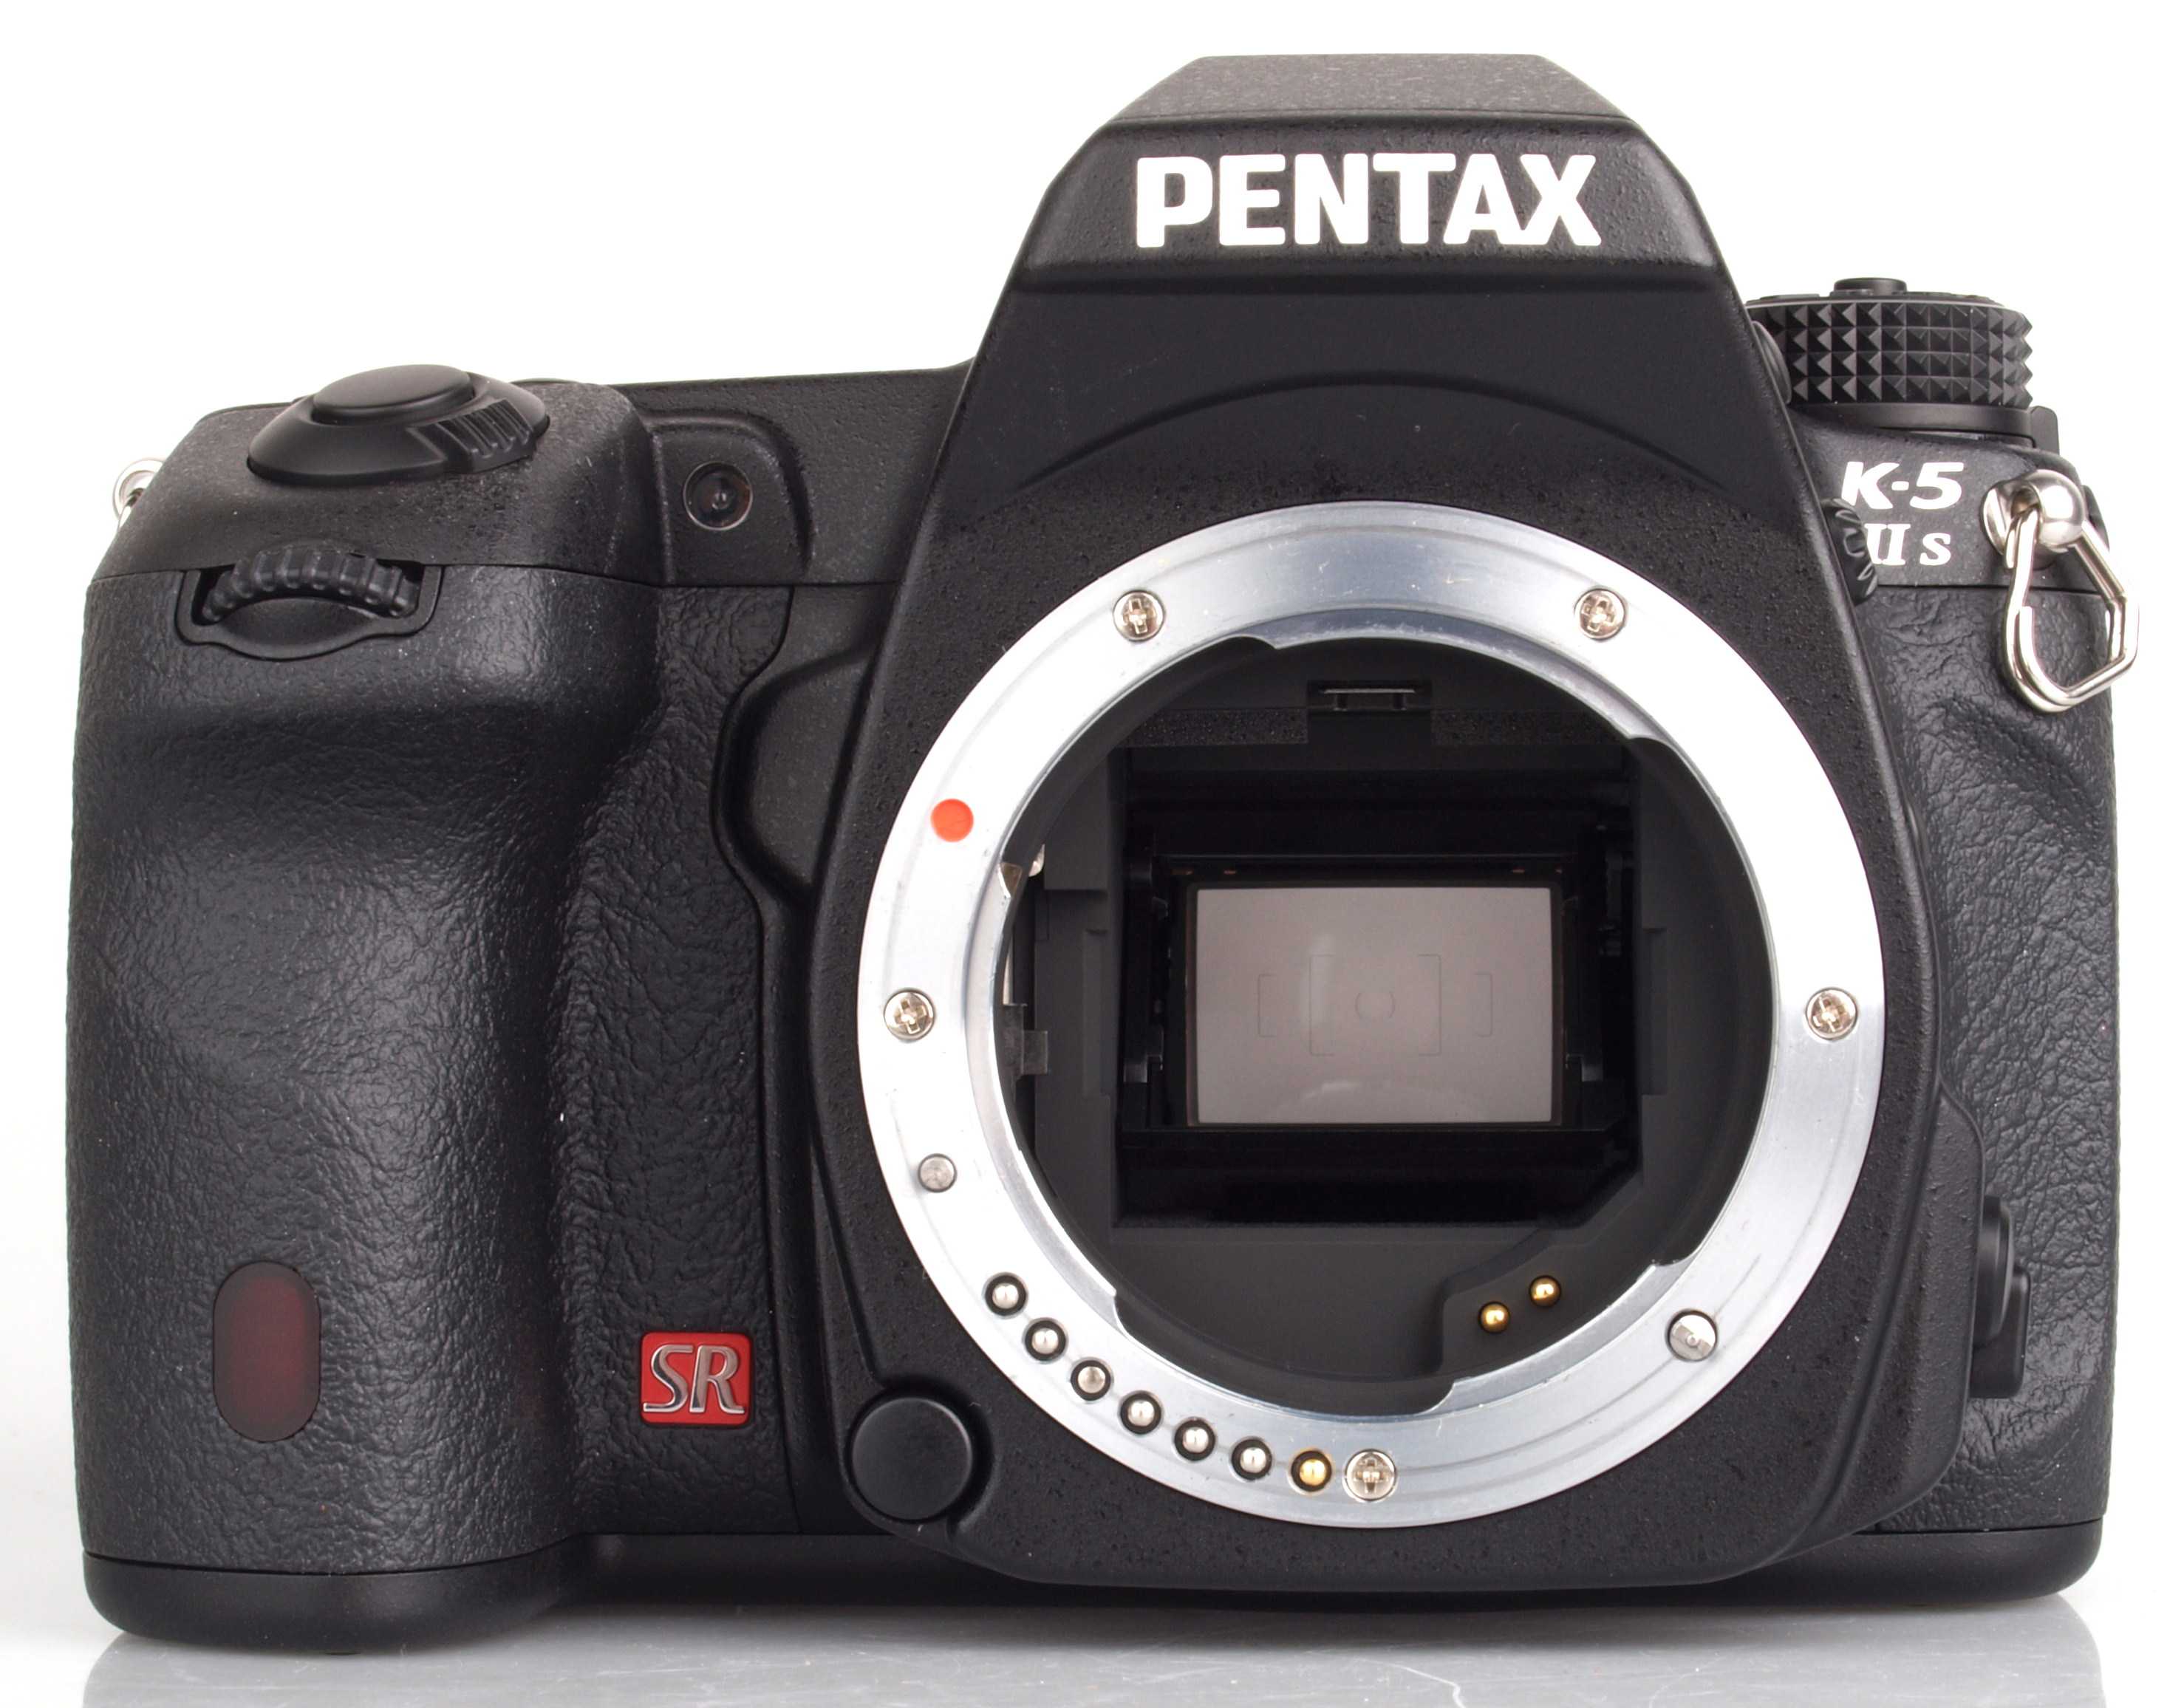 Цифровой фотоаппарат Pentax K-5 IIs body - подробные характеристики обзоры видео фото Цены в интернет-магазинах где можно купить цифровую фотоаппарат Pentax K-5 IIs body